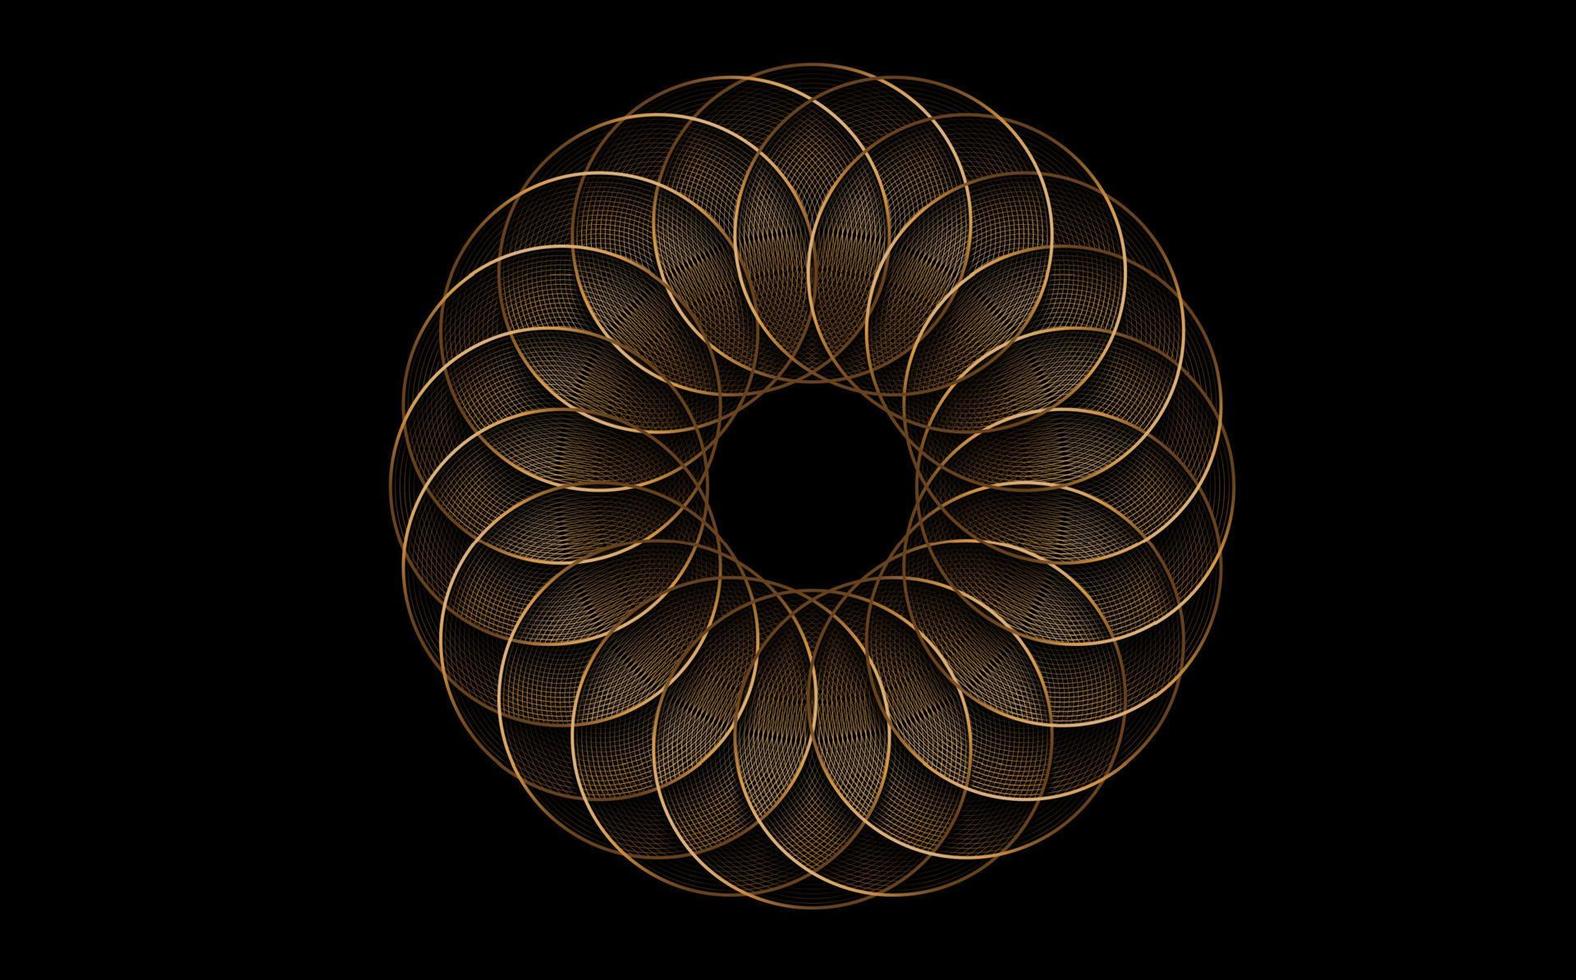 torus yantra, elemento dei cerchi della geometria sacra del fiore d'oro. ornamento matematico circolare mandala logo dorato. modello circolare di lusso dai cerchi incrociati, vettore isolato su sfondo nero